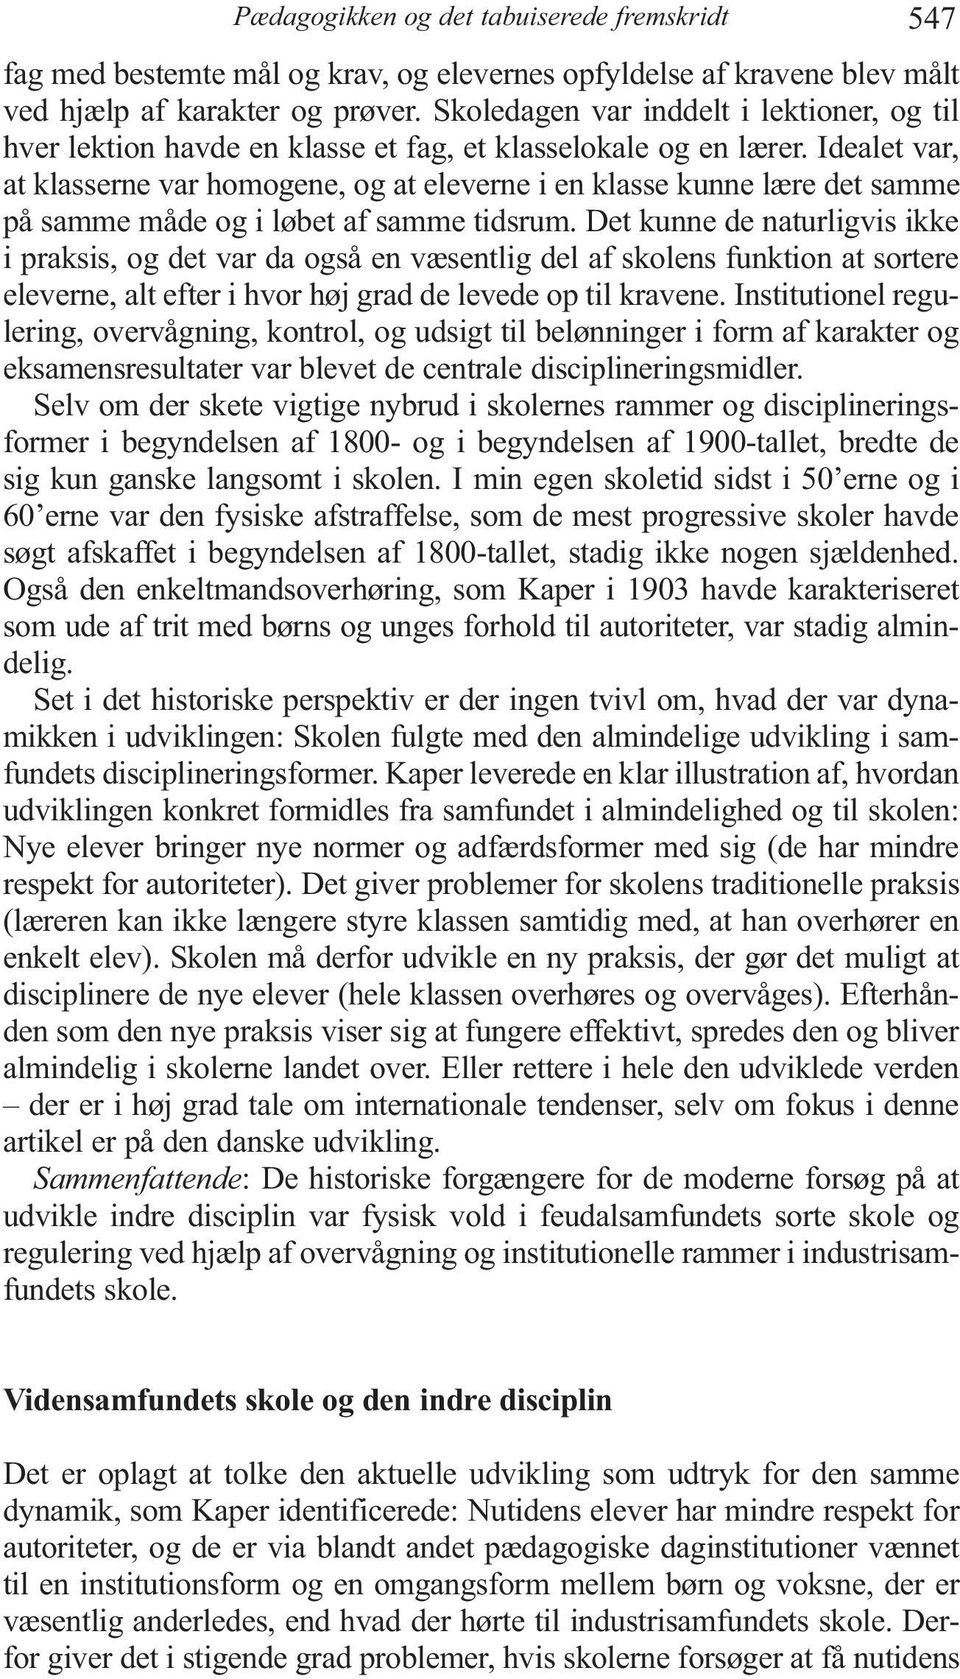 PÆDAGOGIKKEN OG DET TABUISEREDE FREMSKRIDT. Per Fibæk Laursen - PDF Free  Download